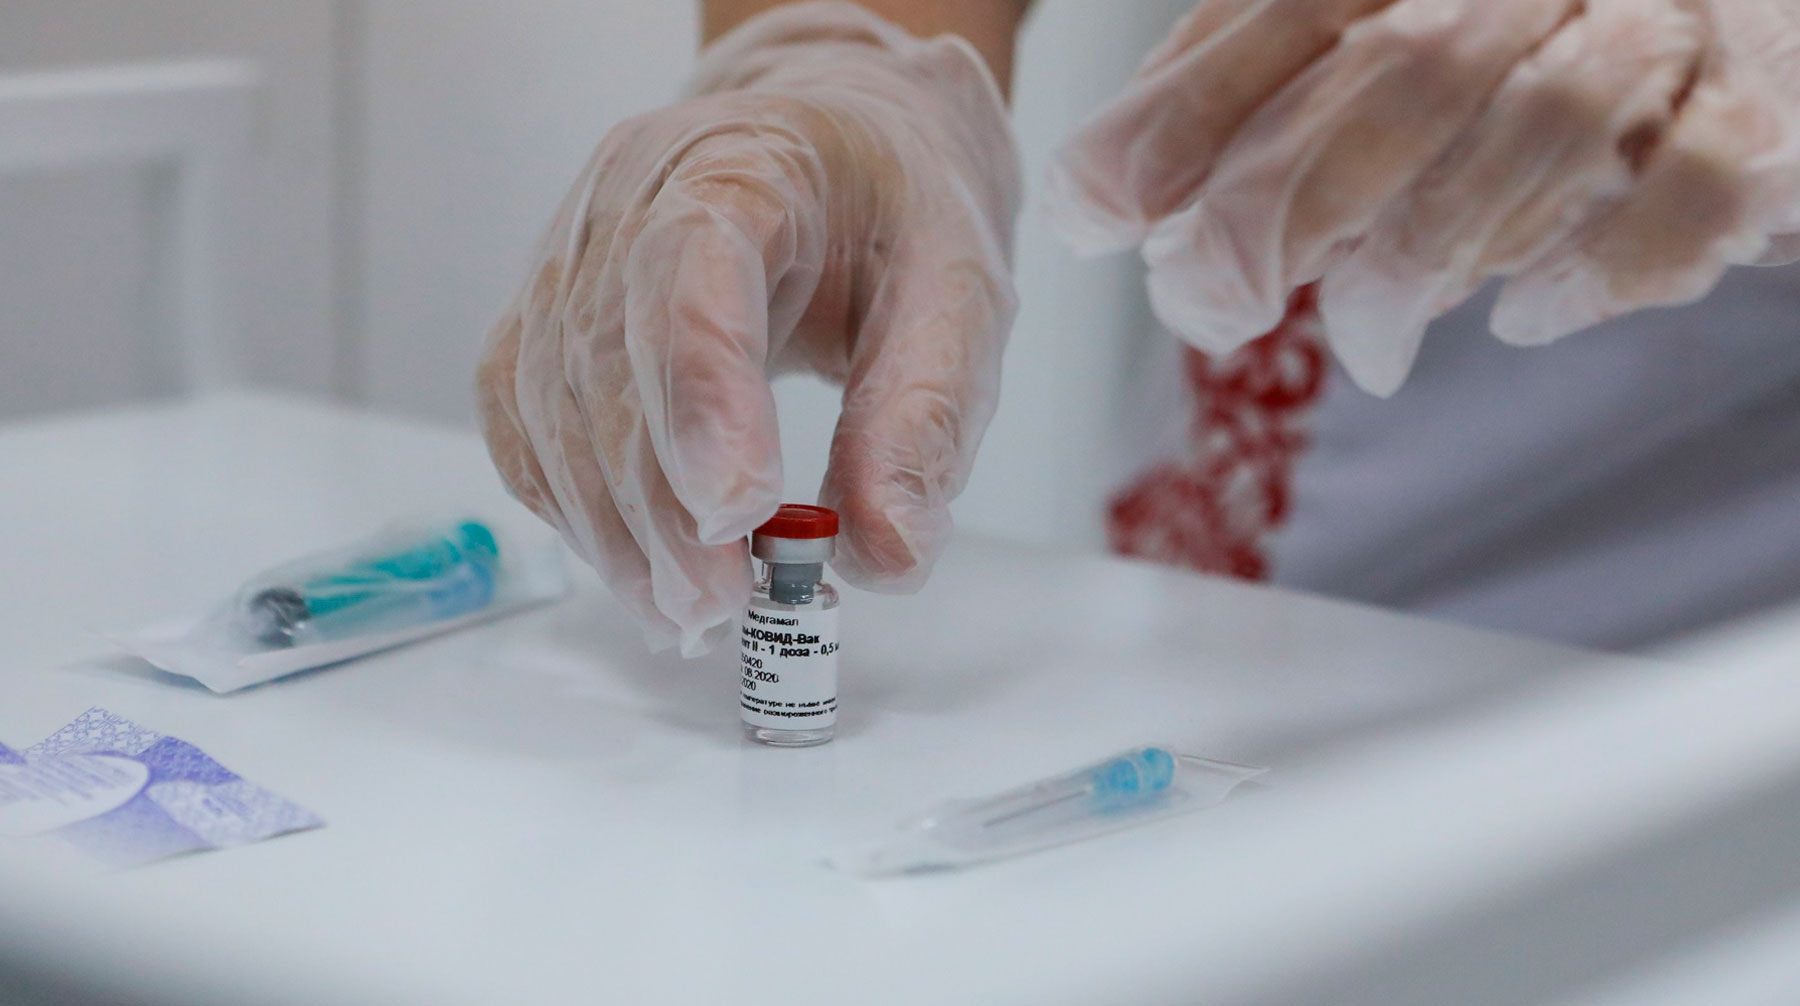 Россия открыта для работы с другими странами по препаратам против коронавируса, подчеркнул президент Фото: © АГН Москва / Софья Сандурская